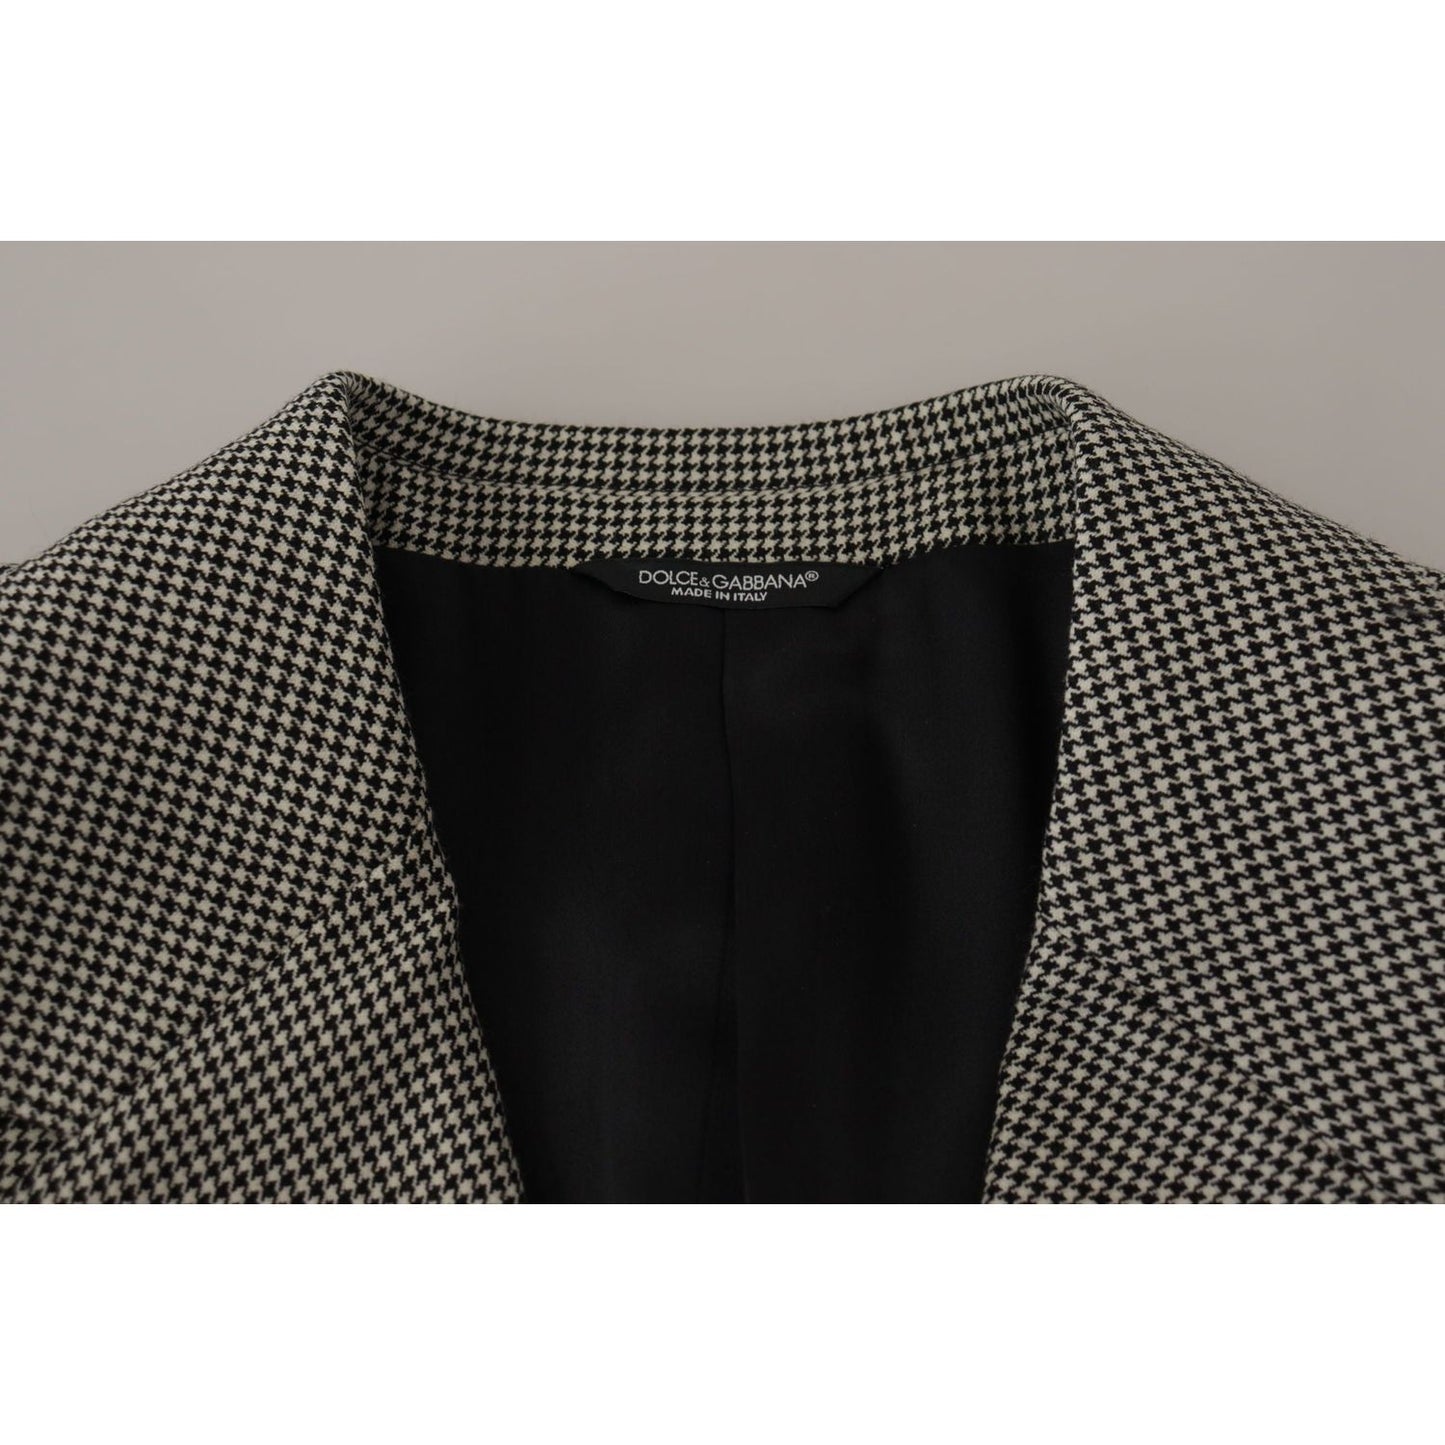 Dolce & GabbanaElegant Gray Checkered Wool BlazerMcRichard Designer Brands£1229.00